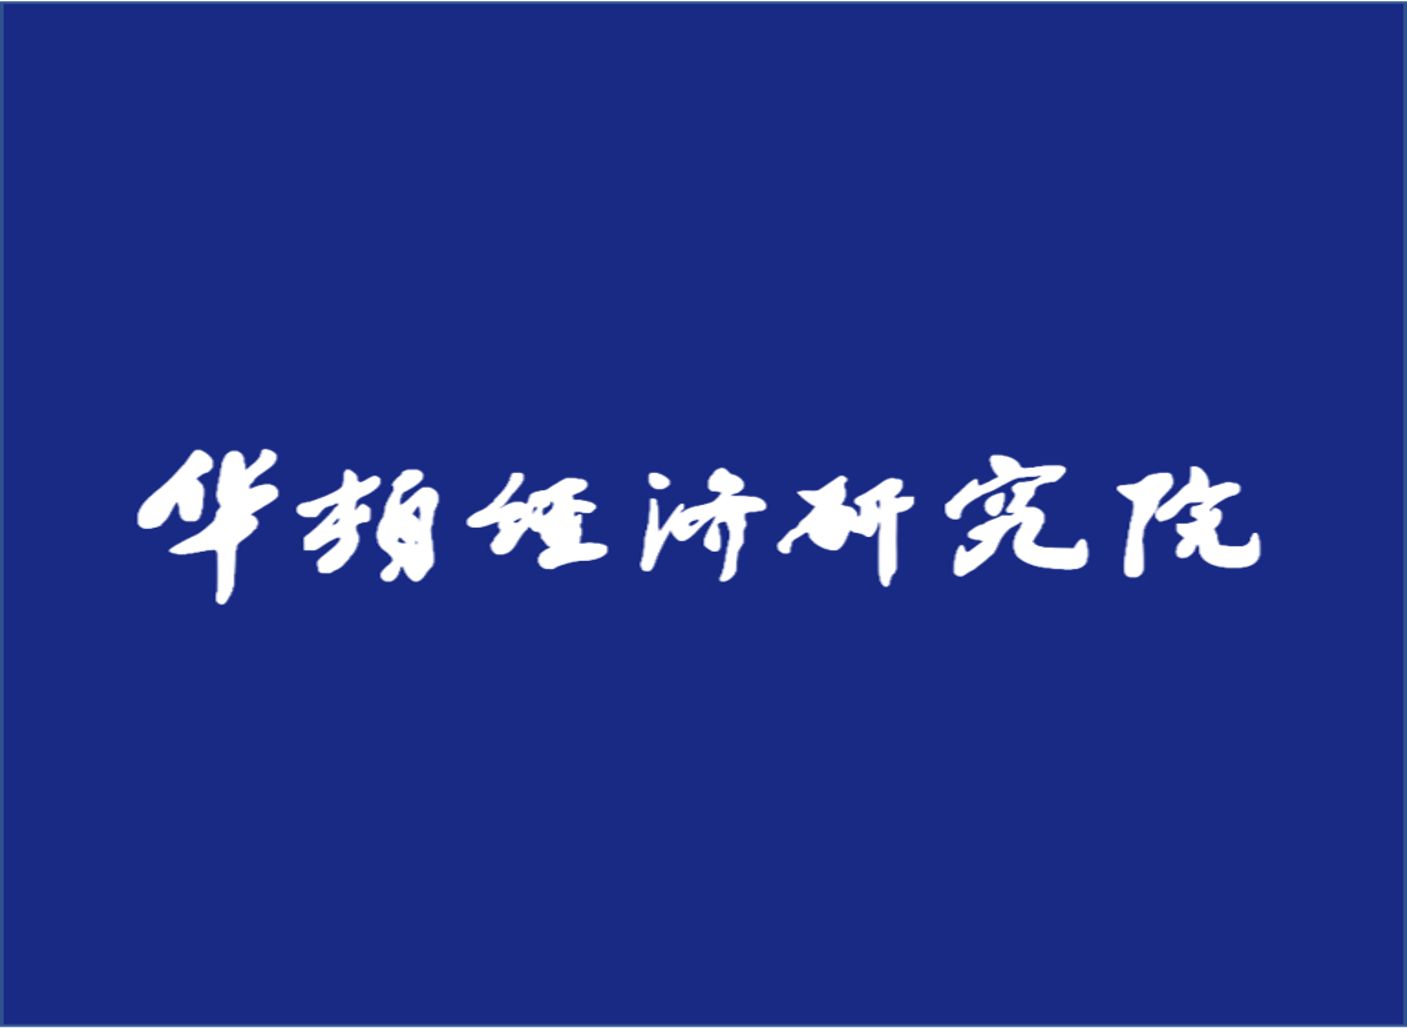 2015年中国道德企业与中国明星企业评选活动【已结束】